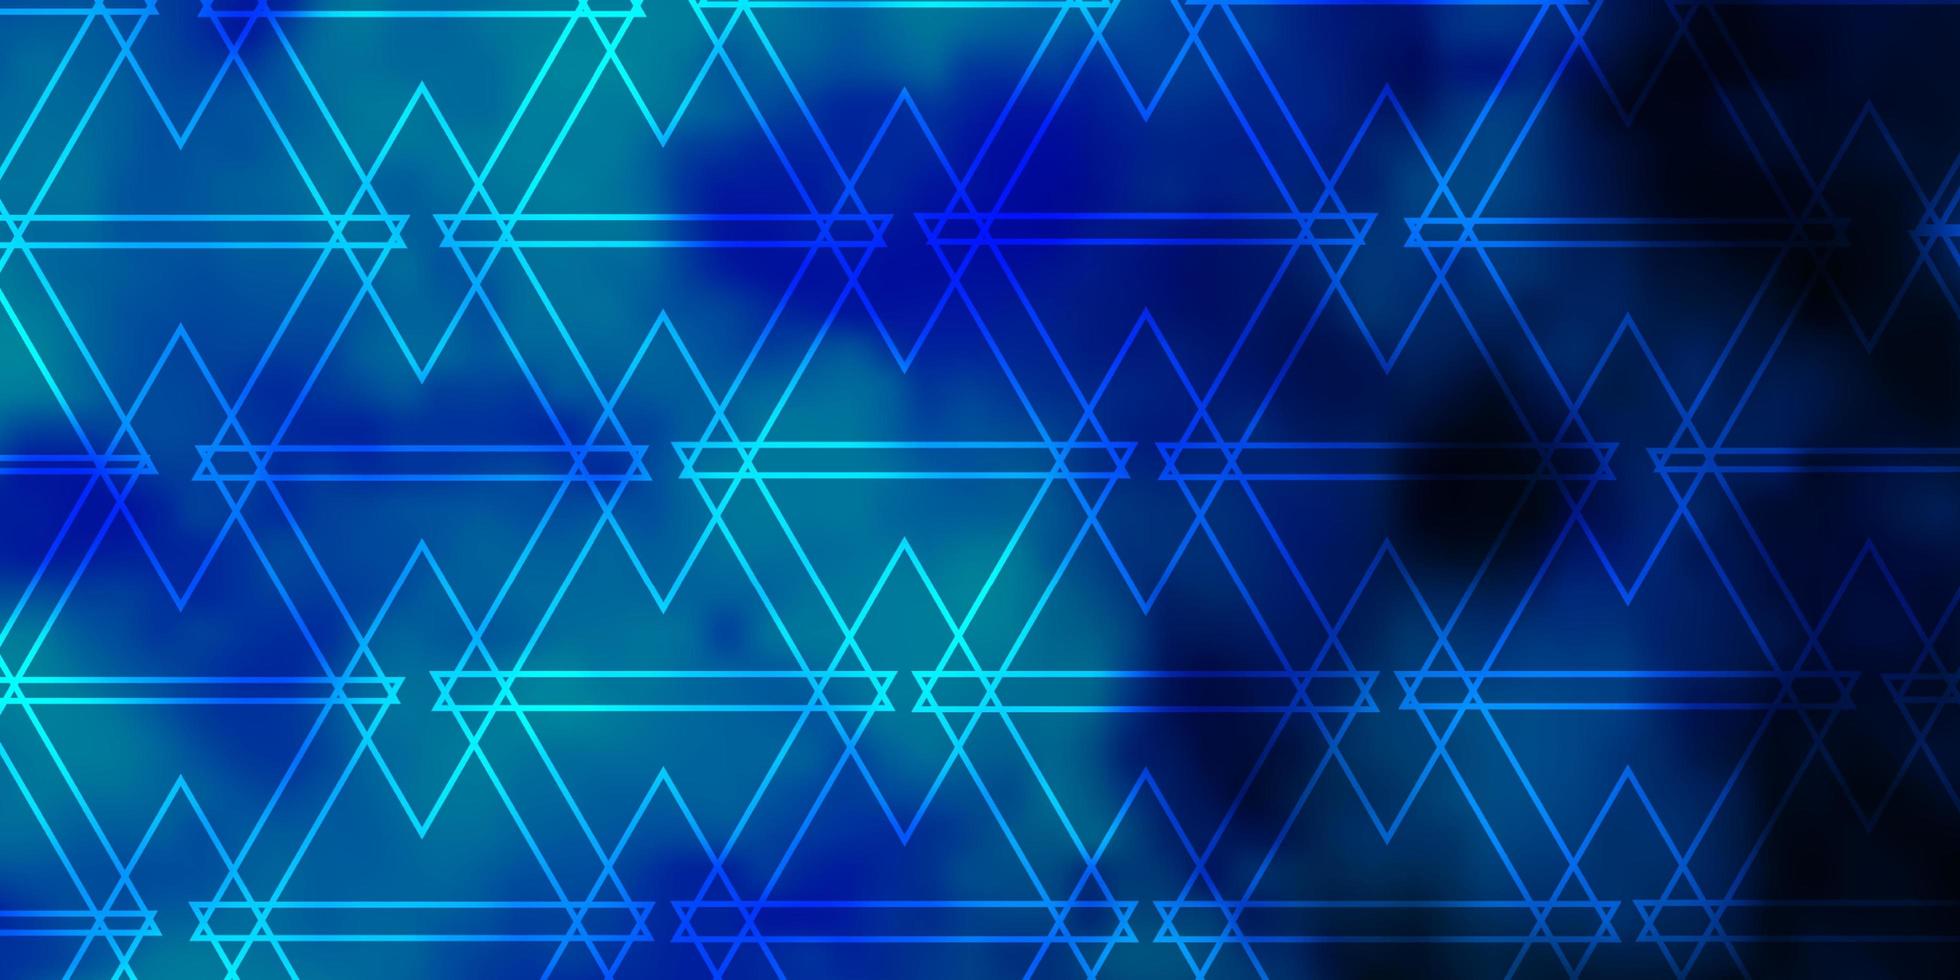 pano de fundo azul claro do vetor com linhas, triângulos.